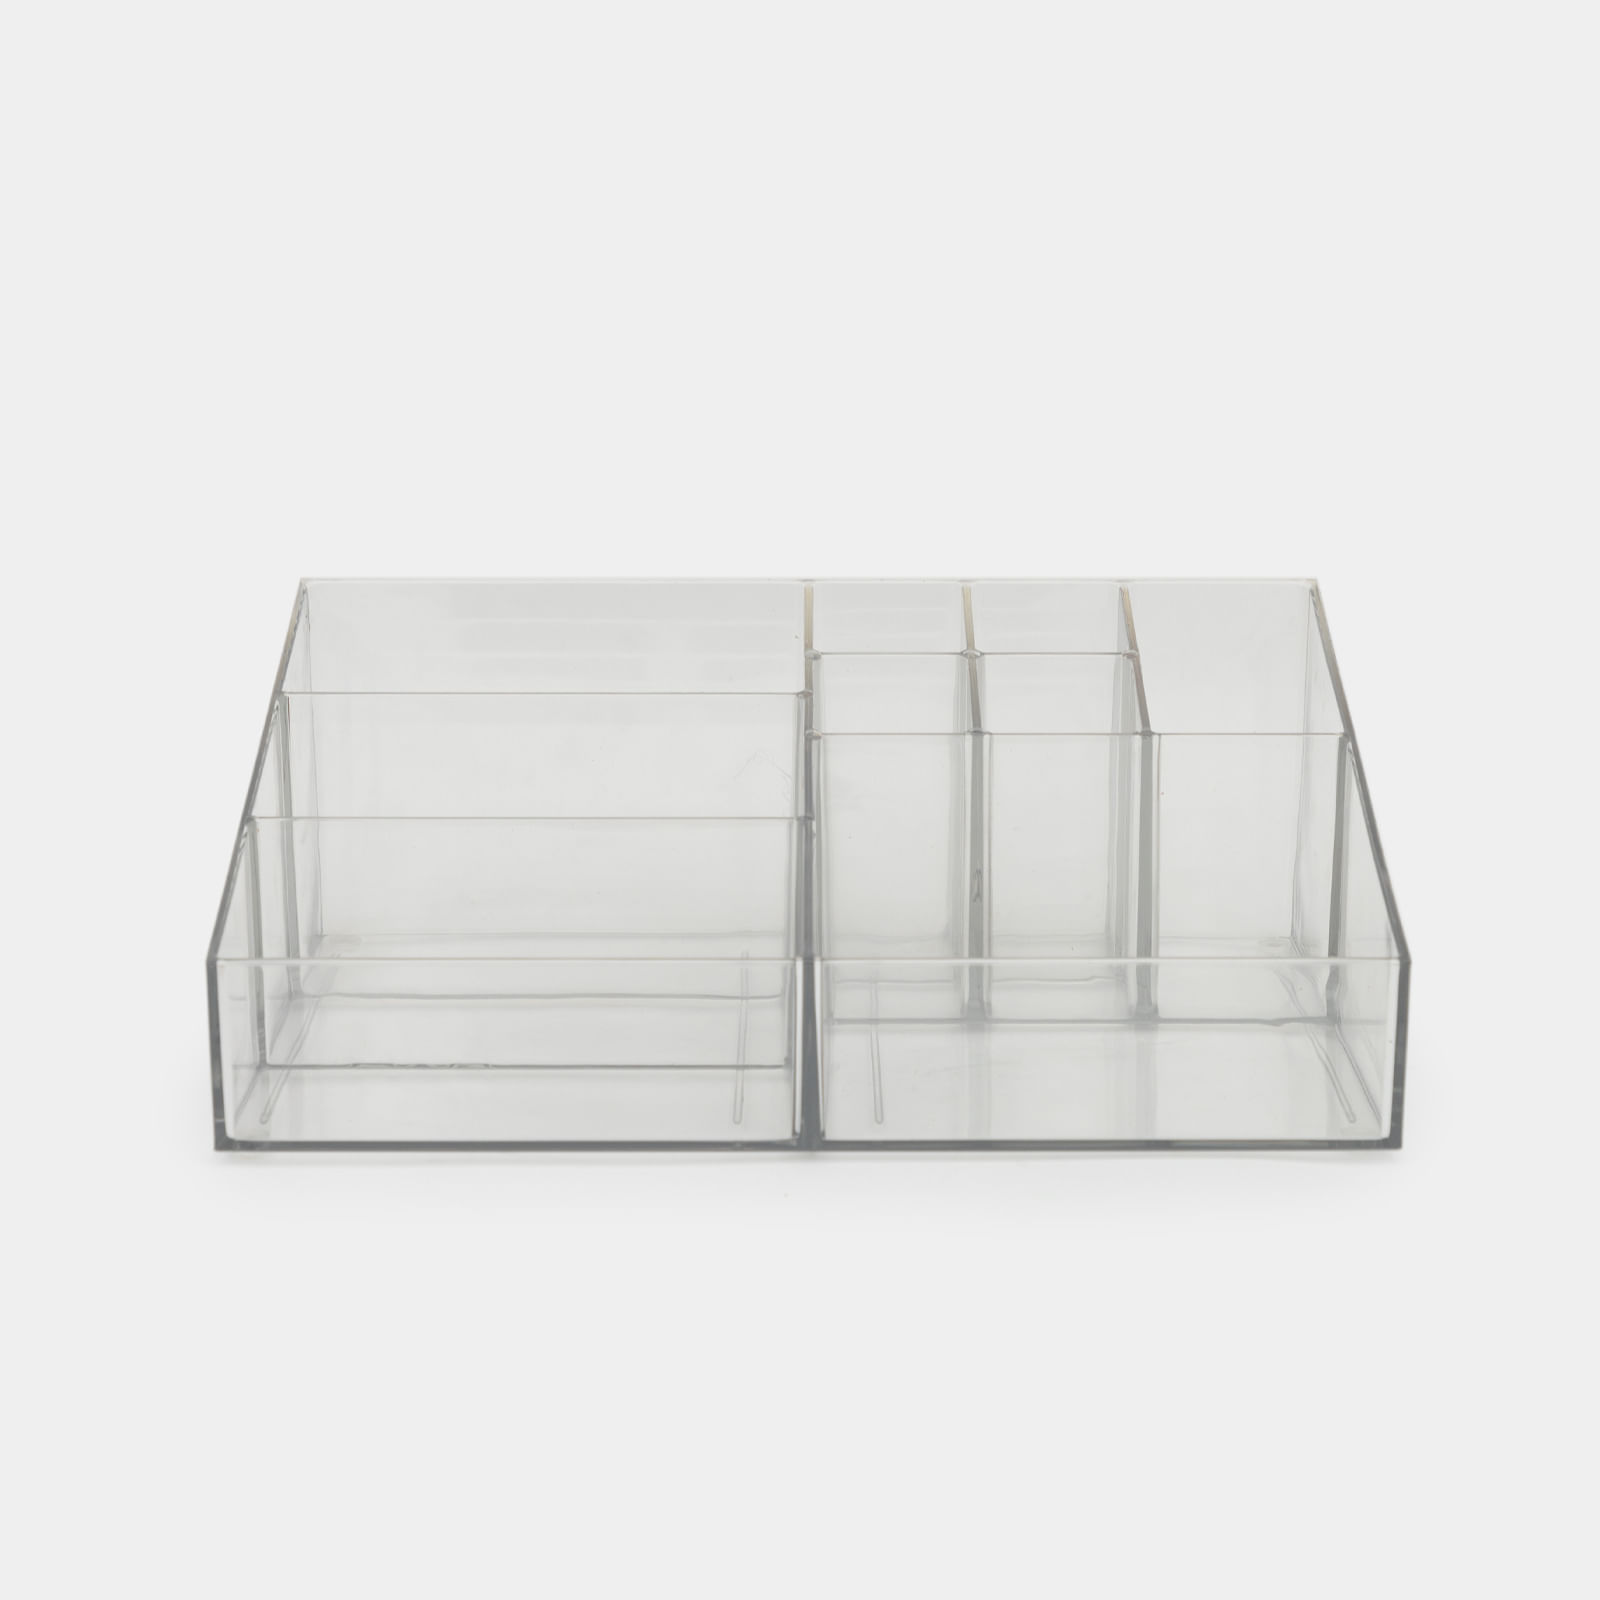 Organizador transparente con 9 compartimientos de 9.2 x 25 x 18.6 cm